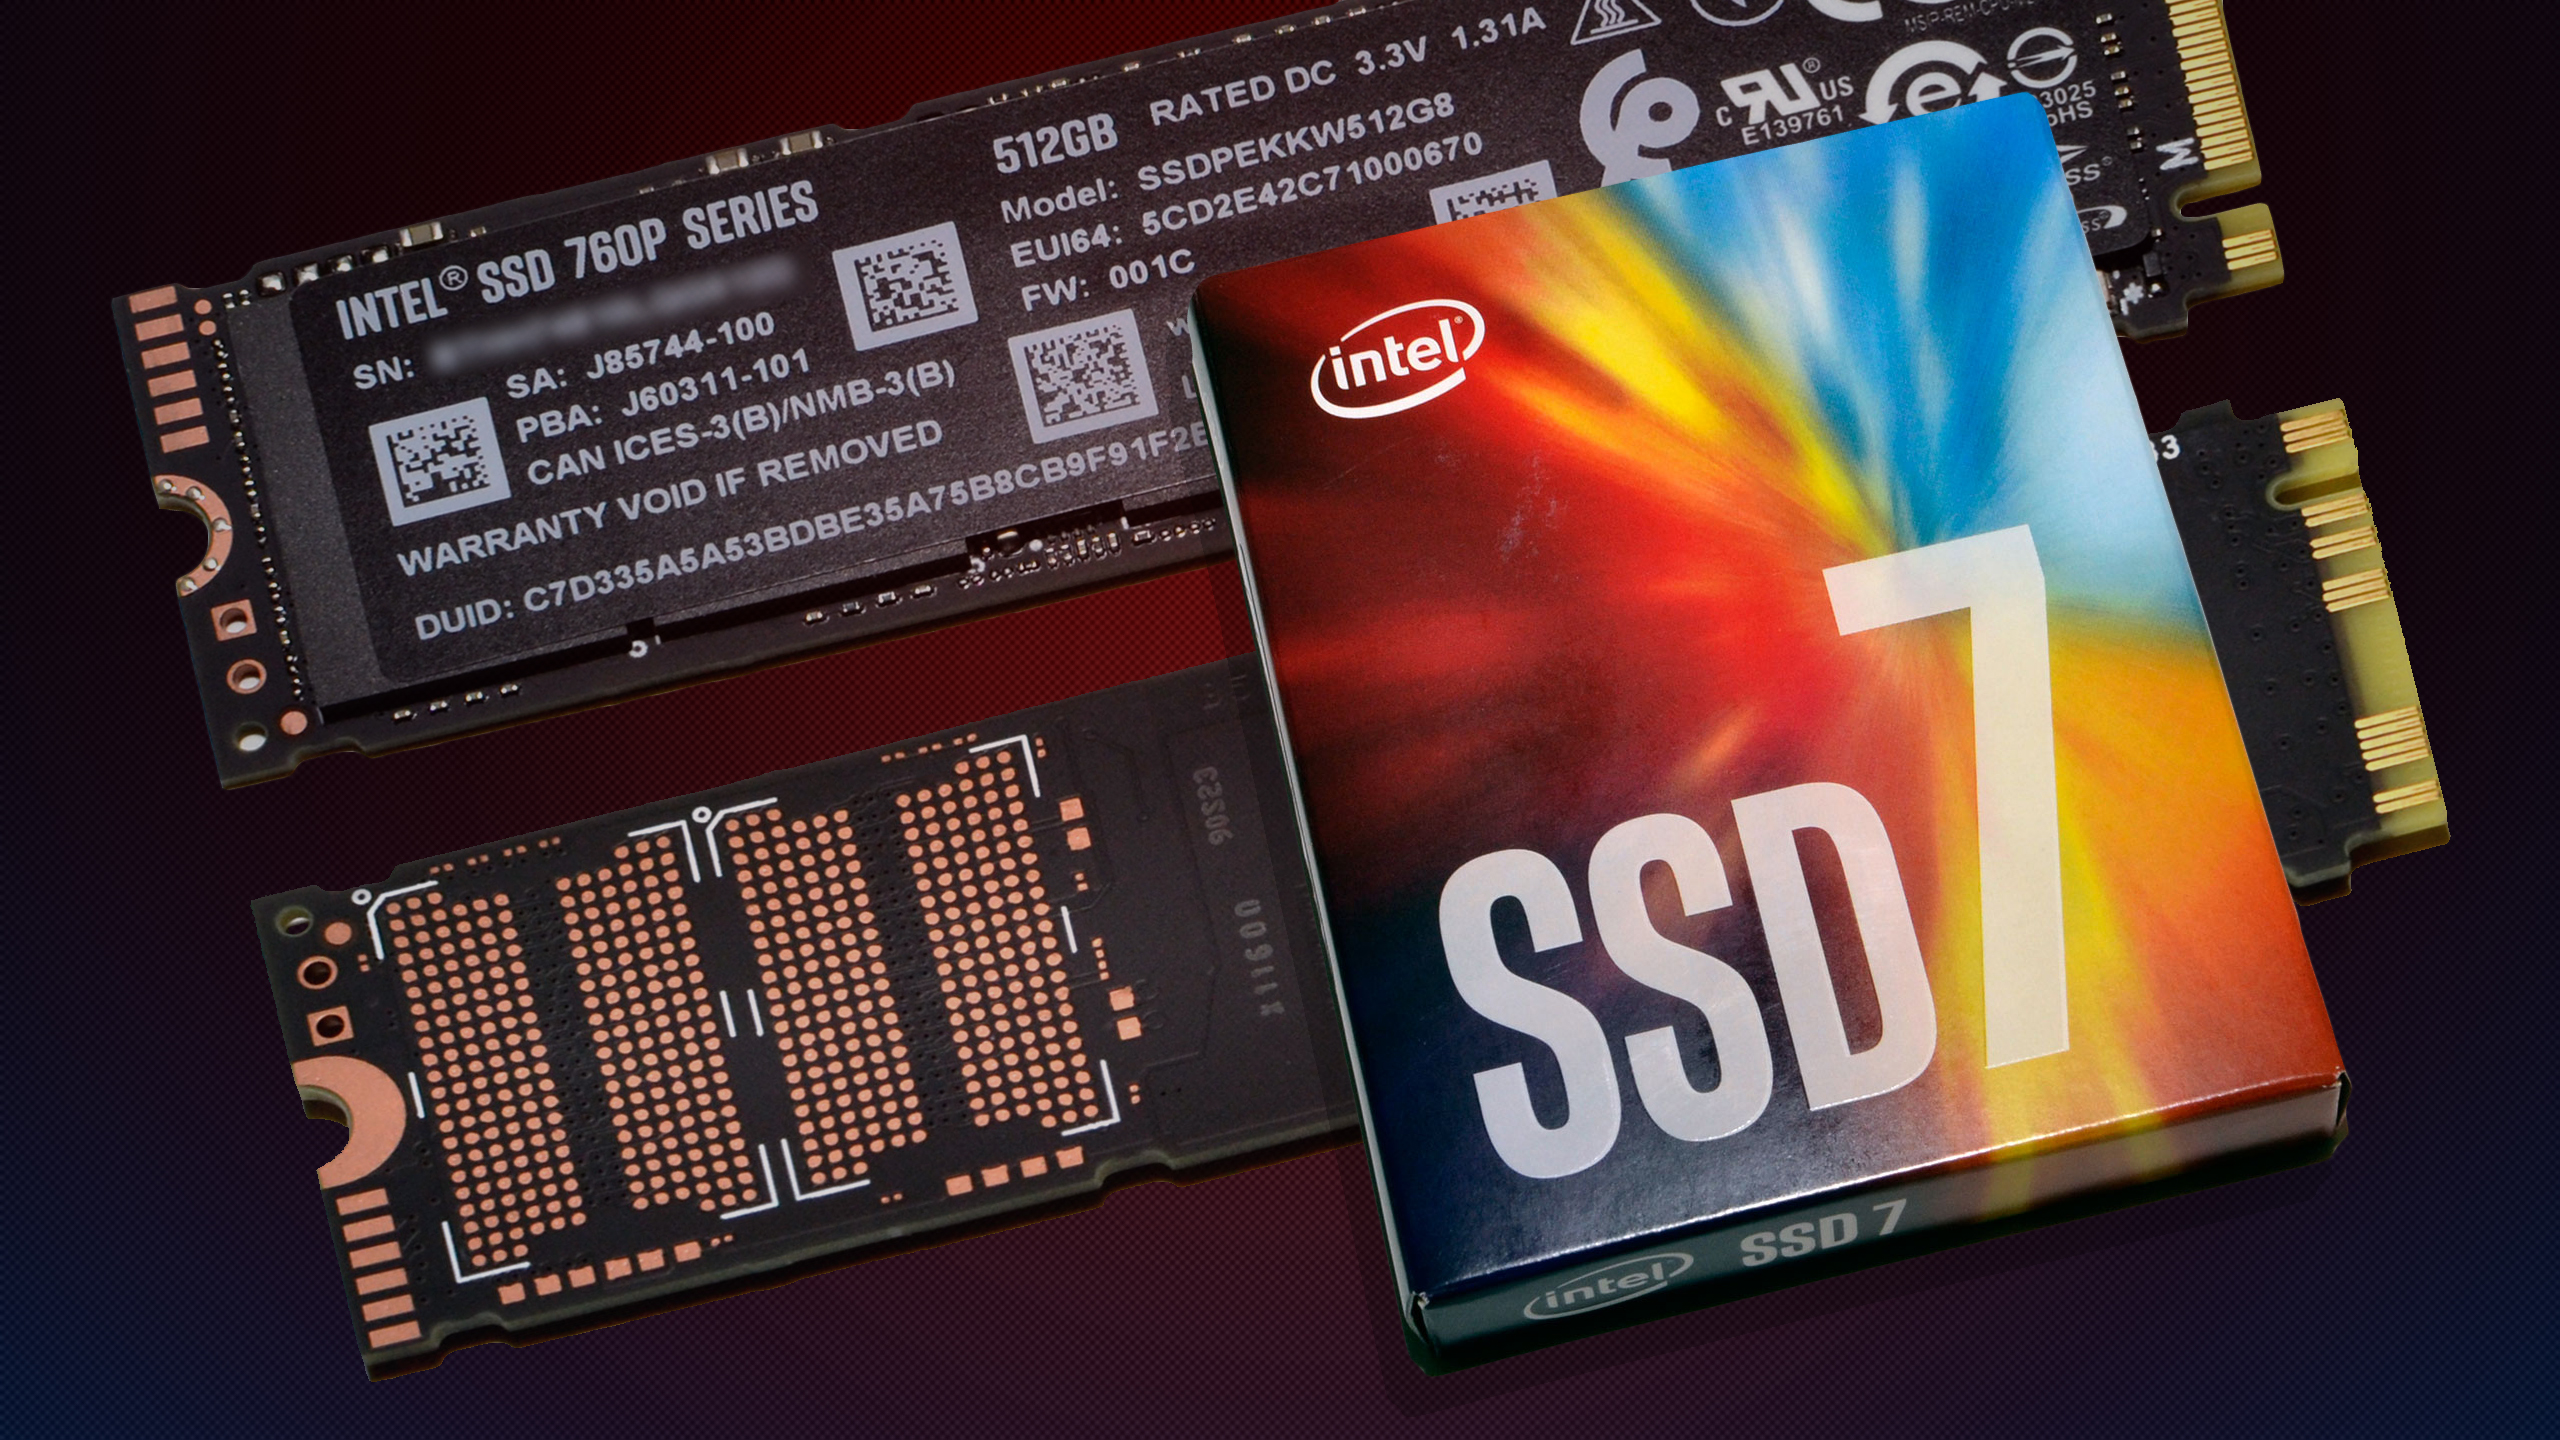 Intel Pro 7600p Series SSDPEKKF512G8X1 512GB M.2 80mm pci-e 3.0 x4 Solid State 